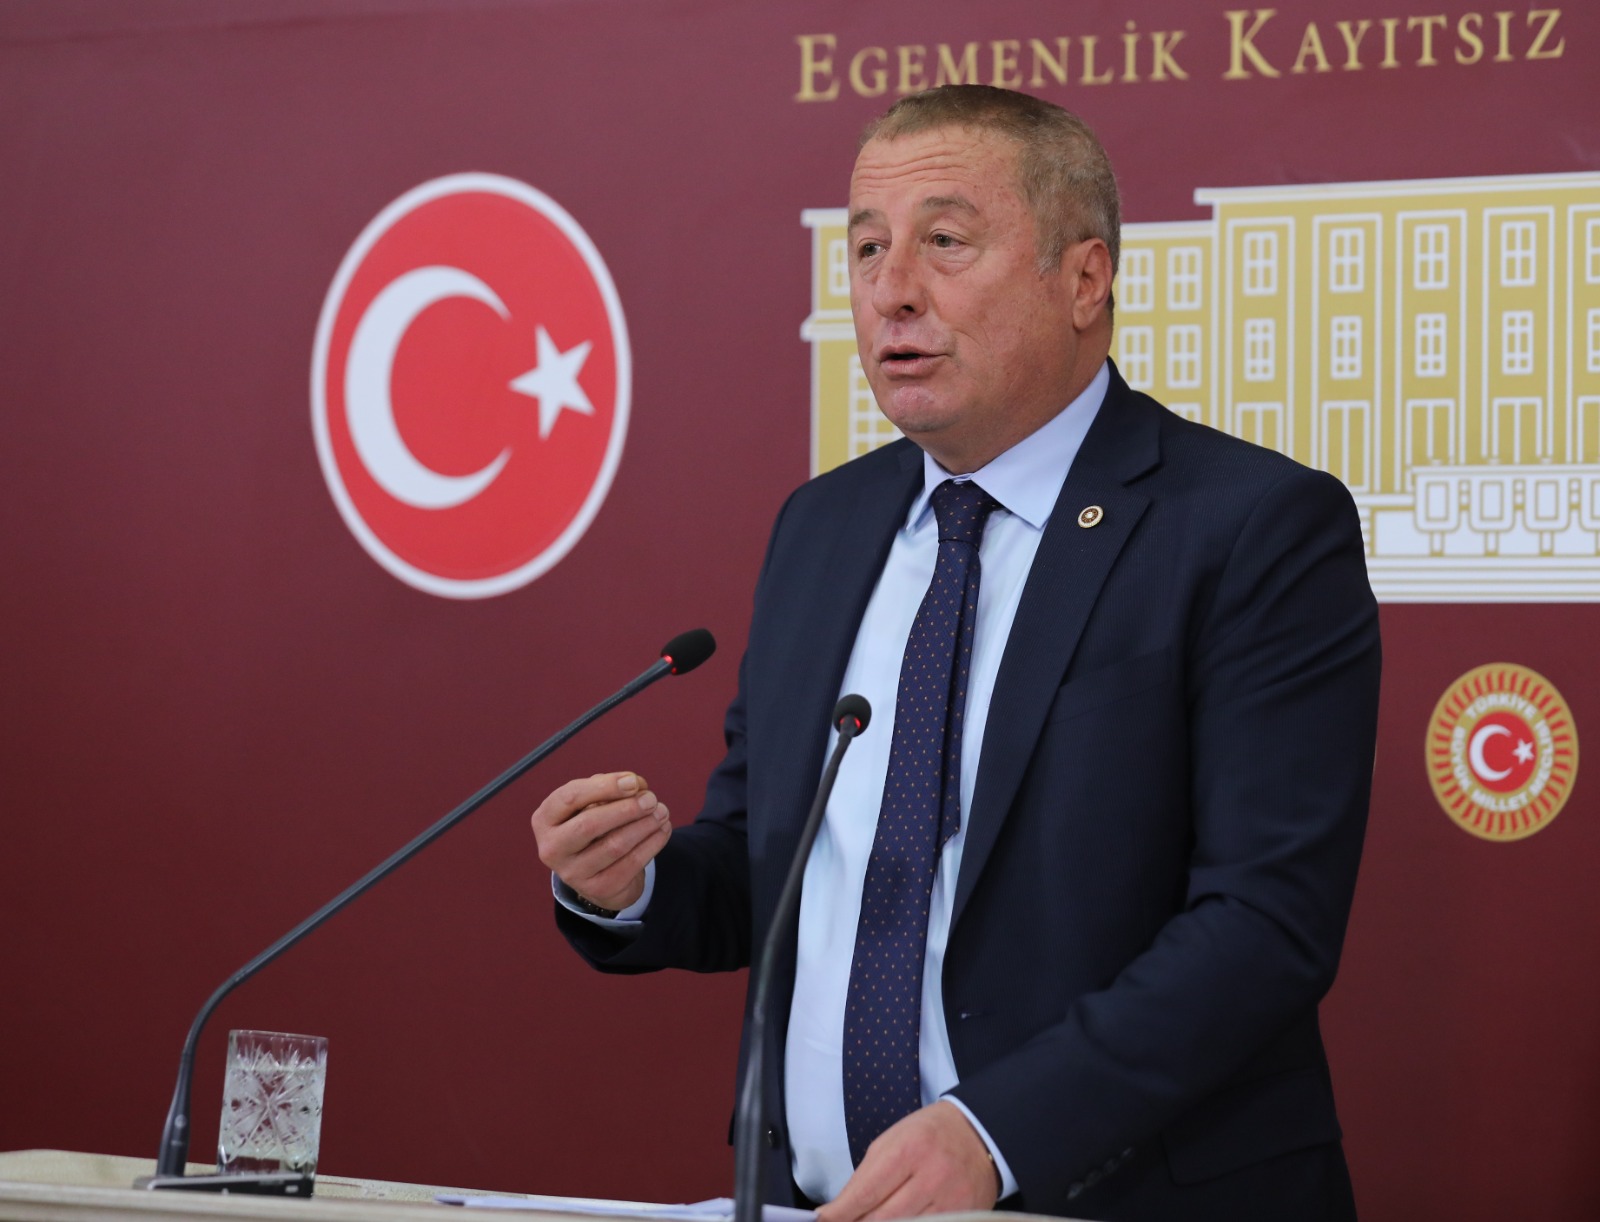 Olgun; “Başkanlık sistemi Türkiye'ye çok büyük bir kötülük yapıyor”